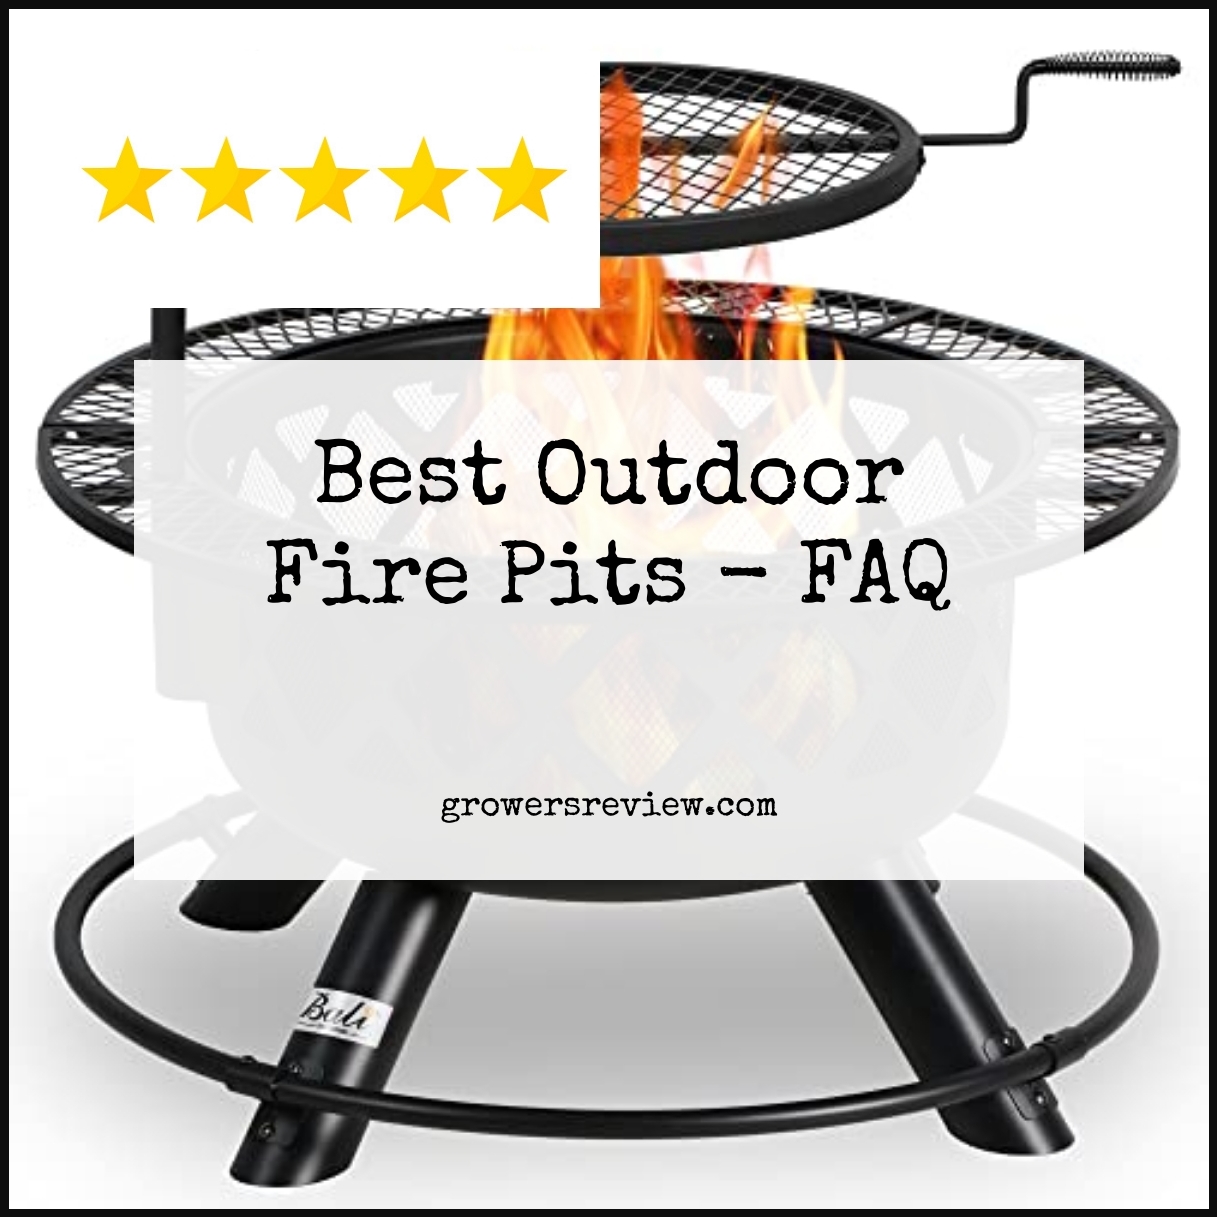 Best Outdoor Fire Pits - FAQ